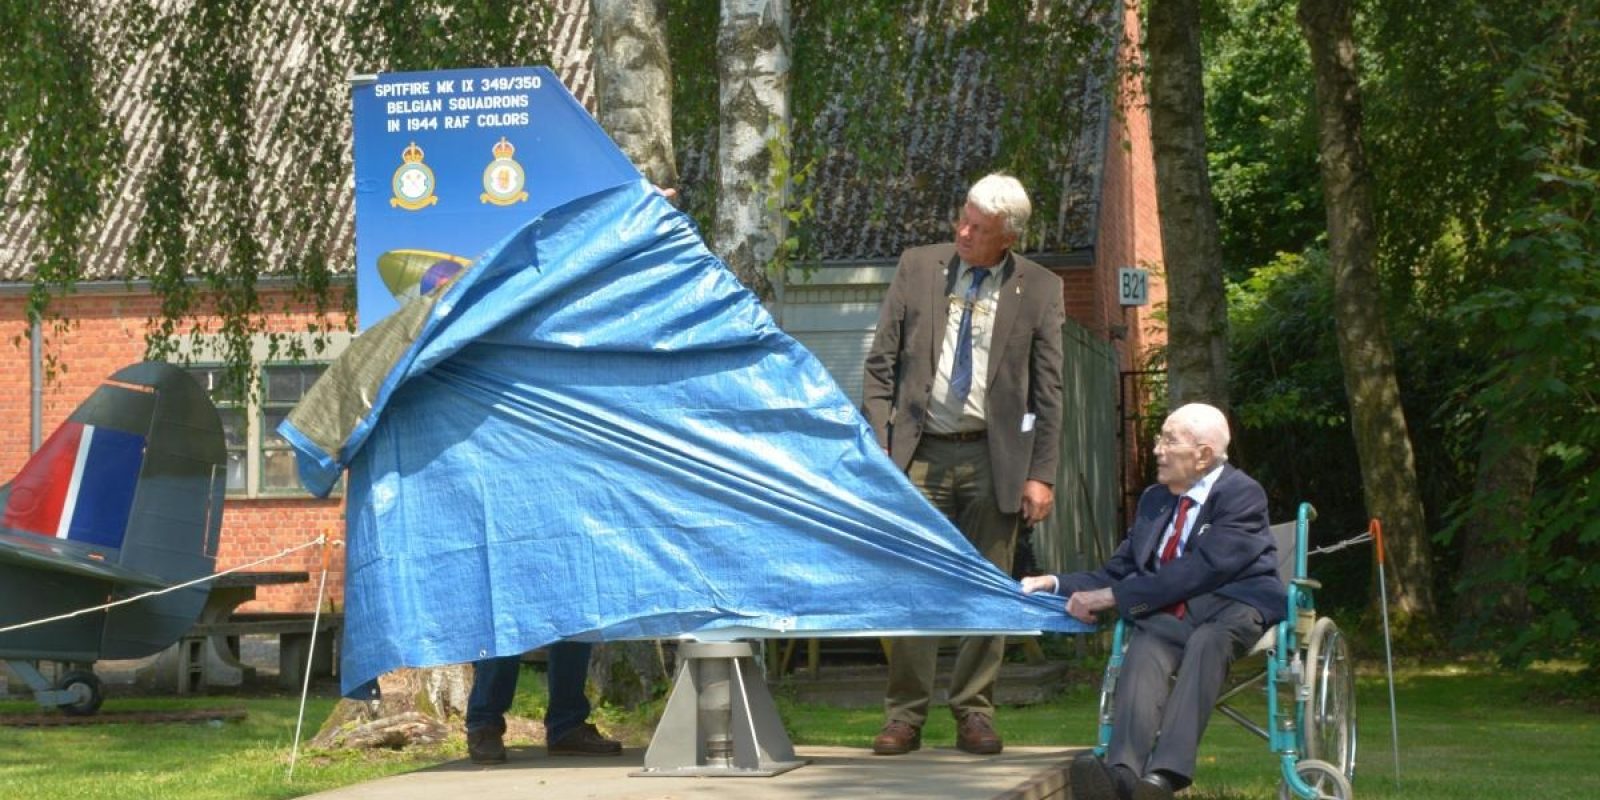 Les deux initiateurs du projet « Spitfire » dévoilent la stèle commémorative (R.Verhegghen)